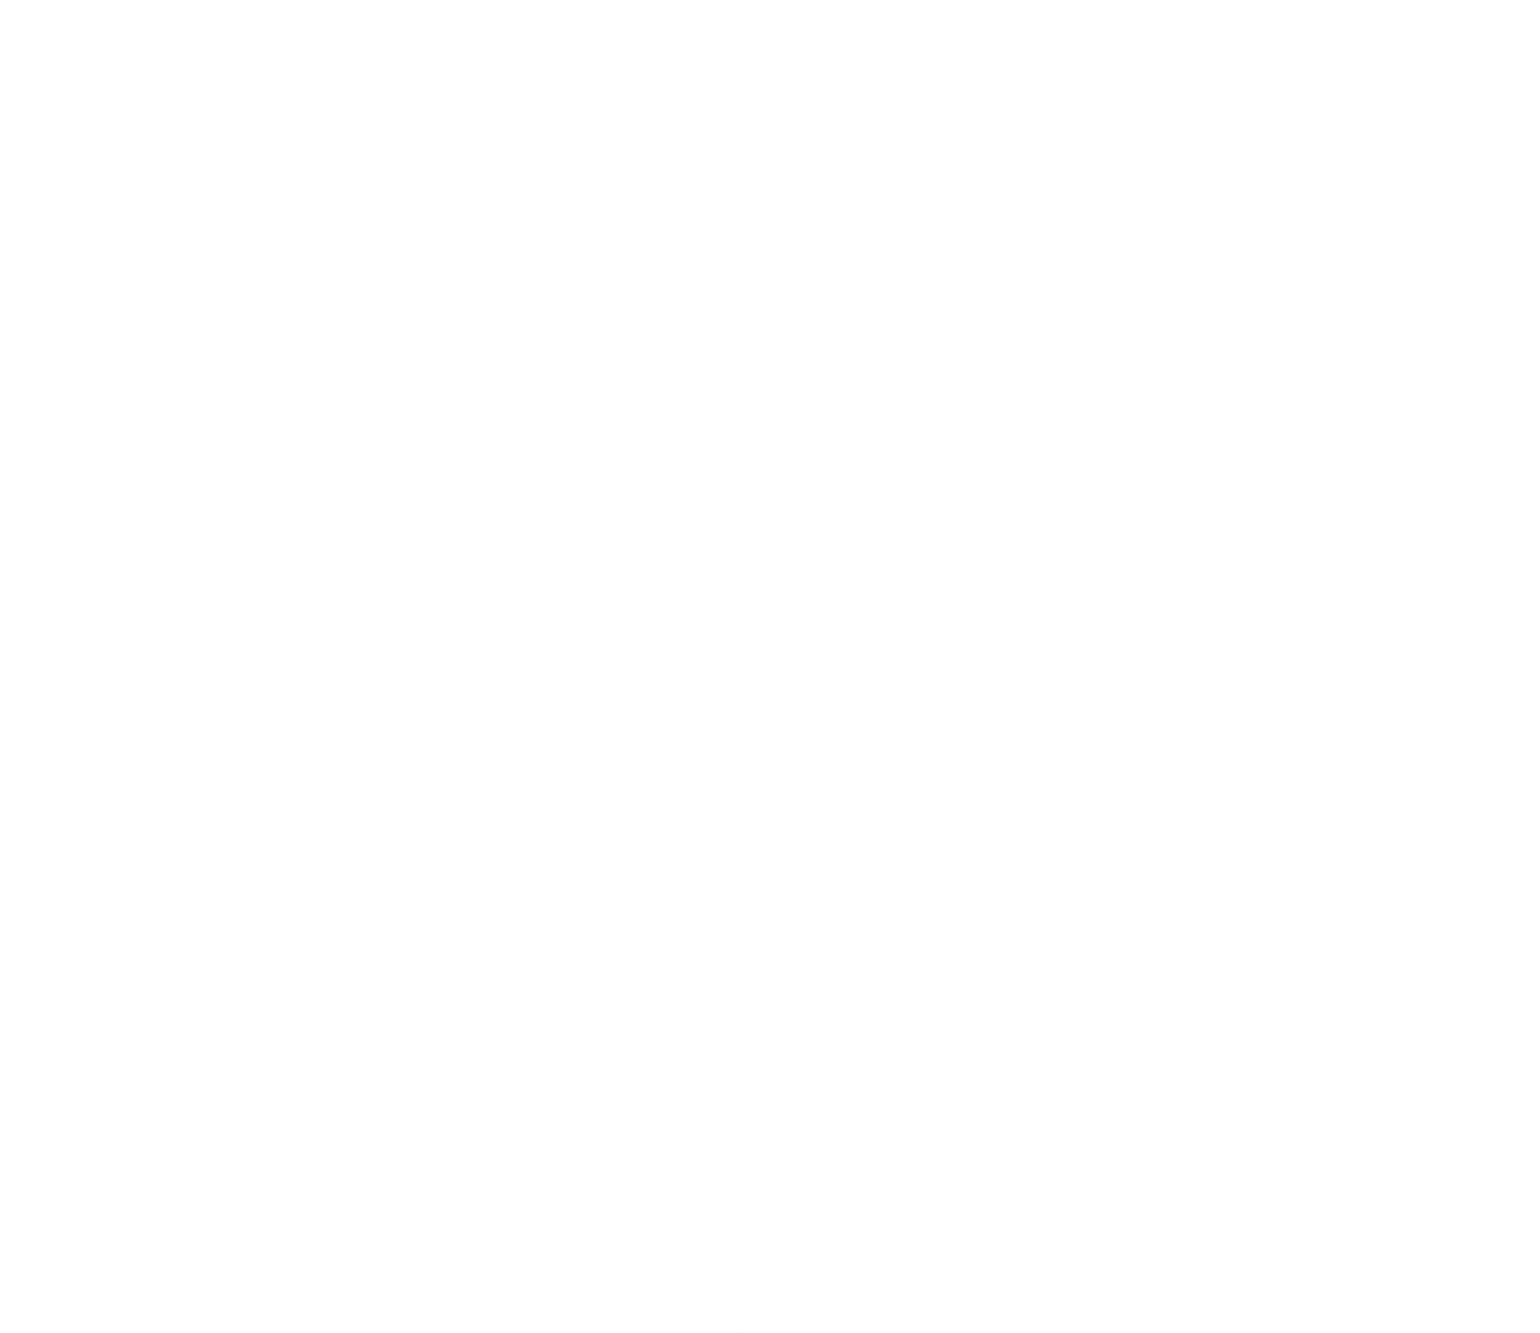 Episcopal Logo